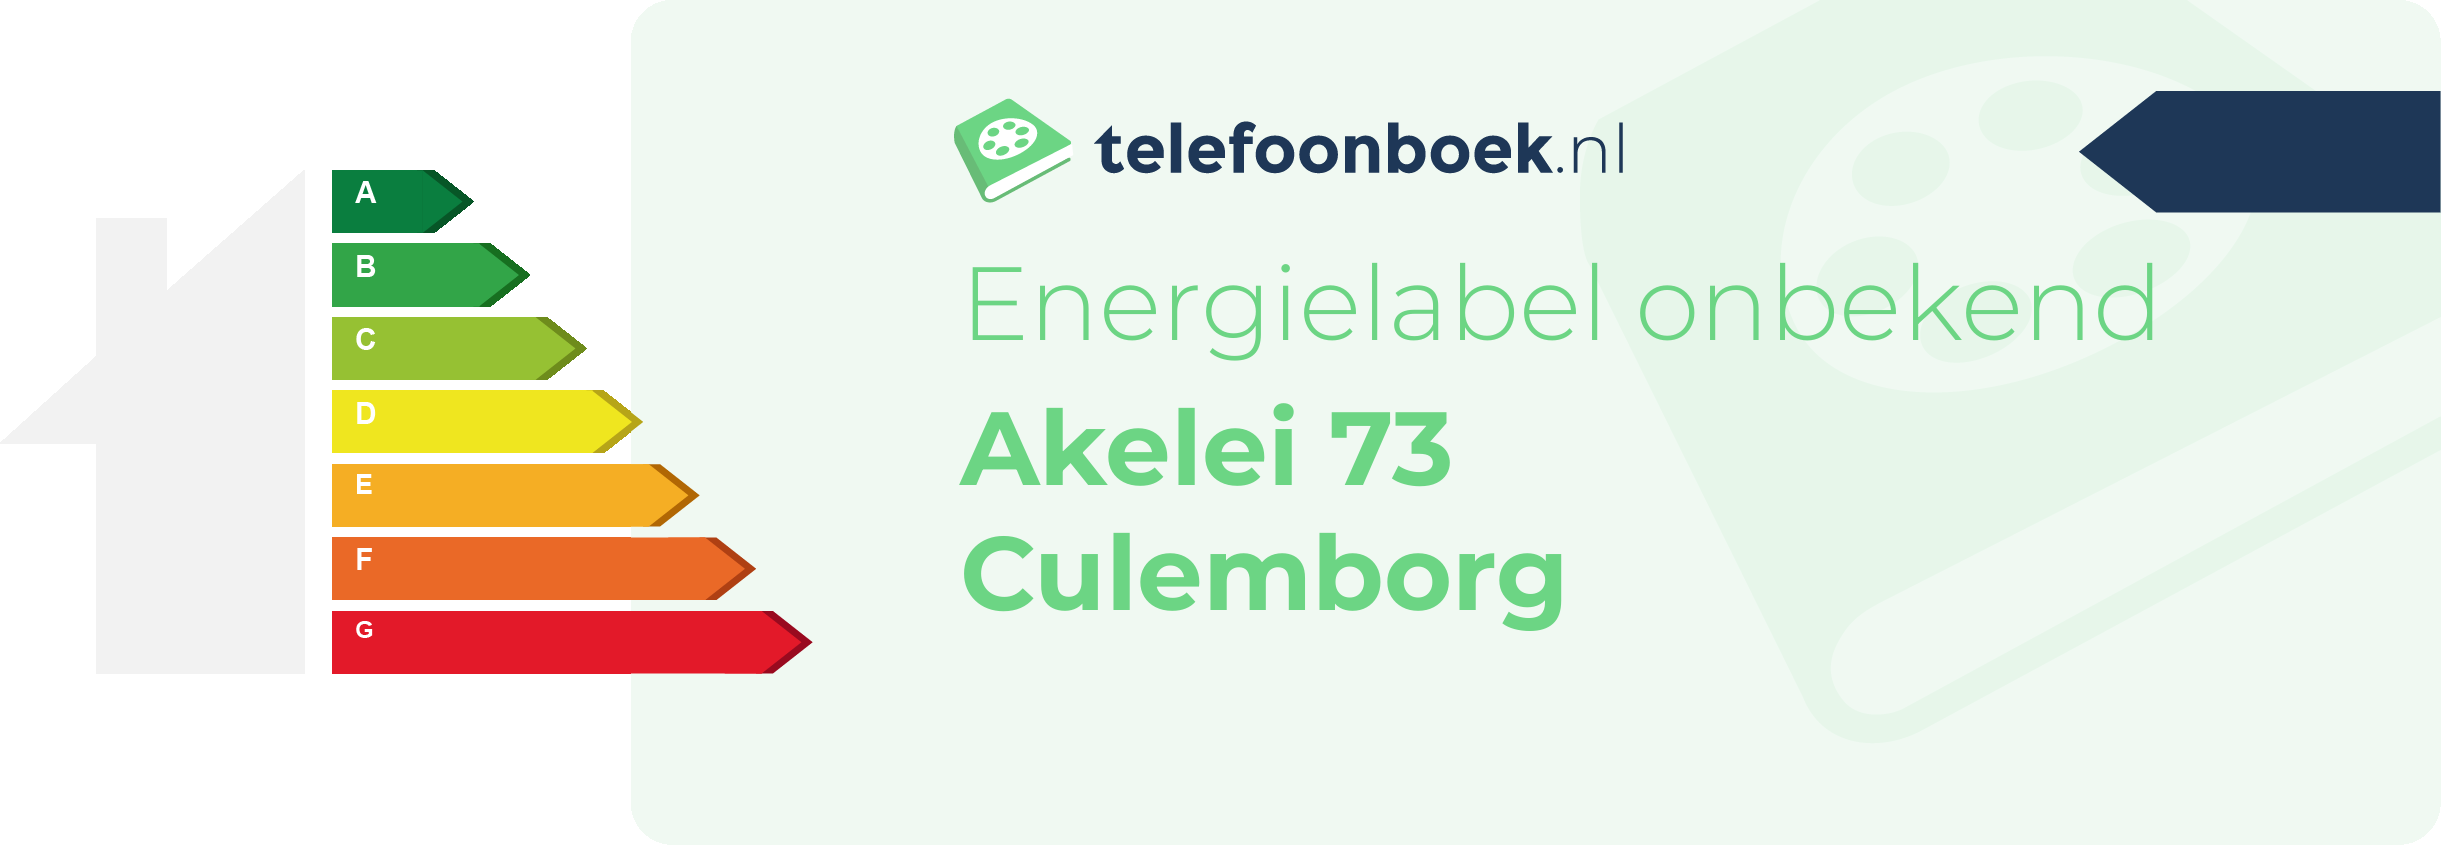 Energielabel Akelei 73 Culemborg